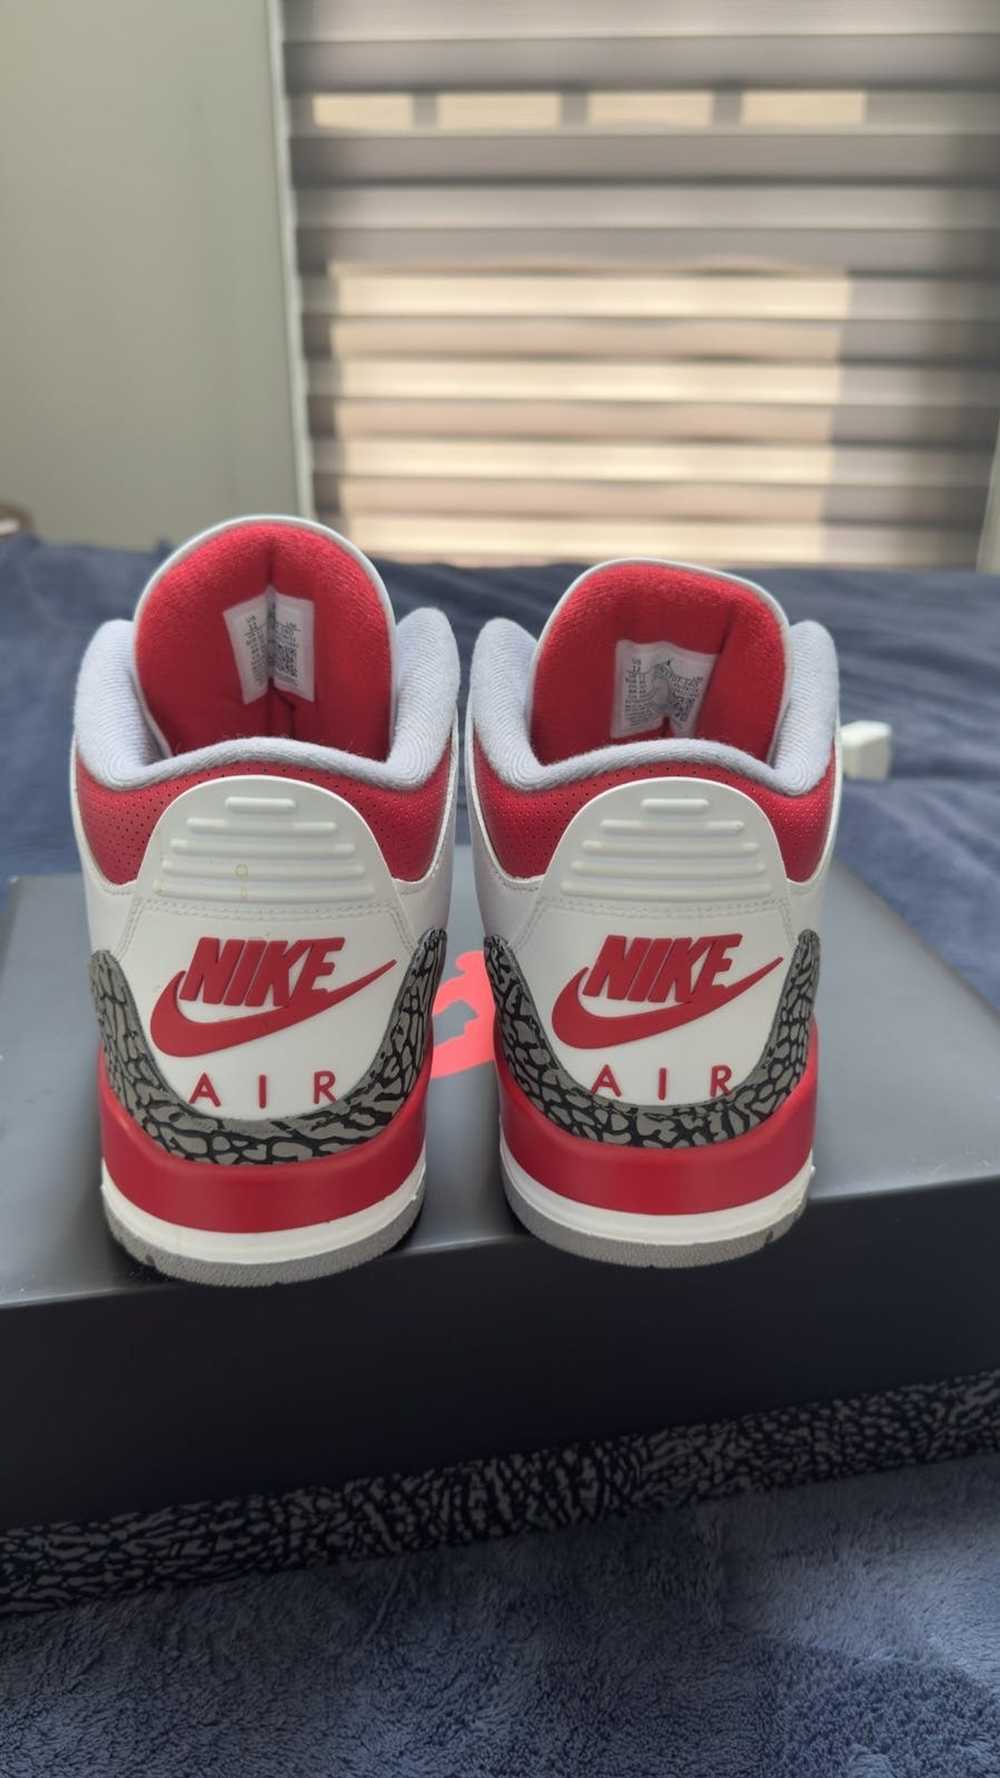 Jordan Brand Jordan 3 “Fire Red” - image 4